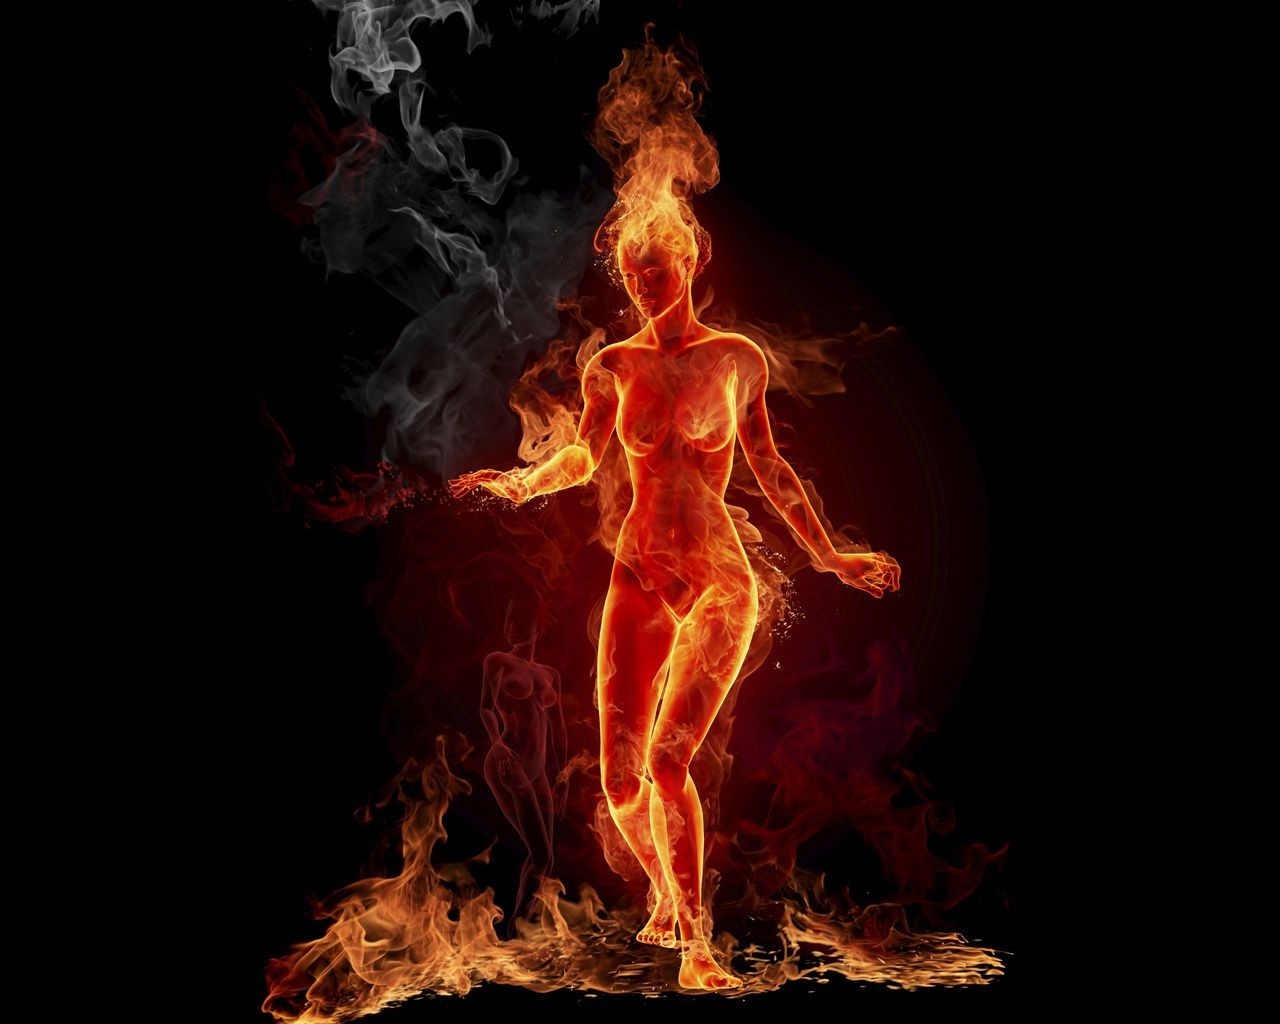 огненные пламя костер горячая легковоспламеняющиеся сжечь тепло блейз дым инферно костра пожар камин зажечь опасность ясень сожгли дрова язык уголь жарить